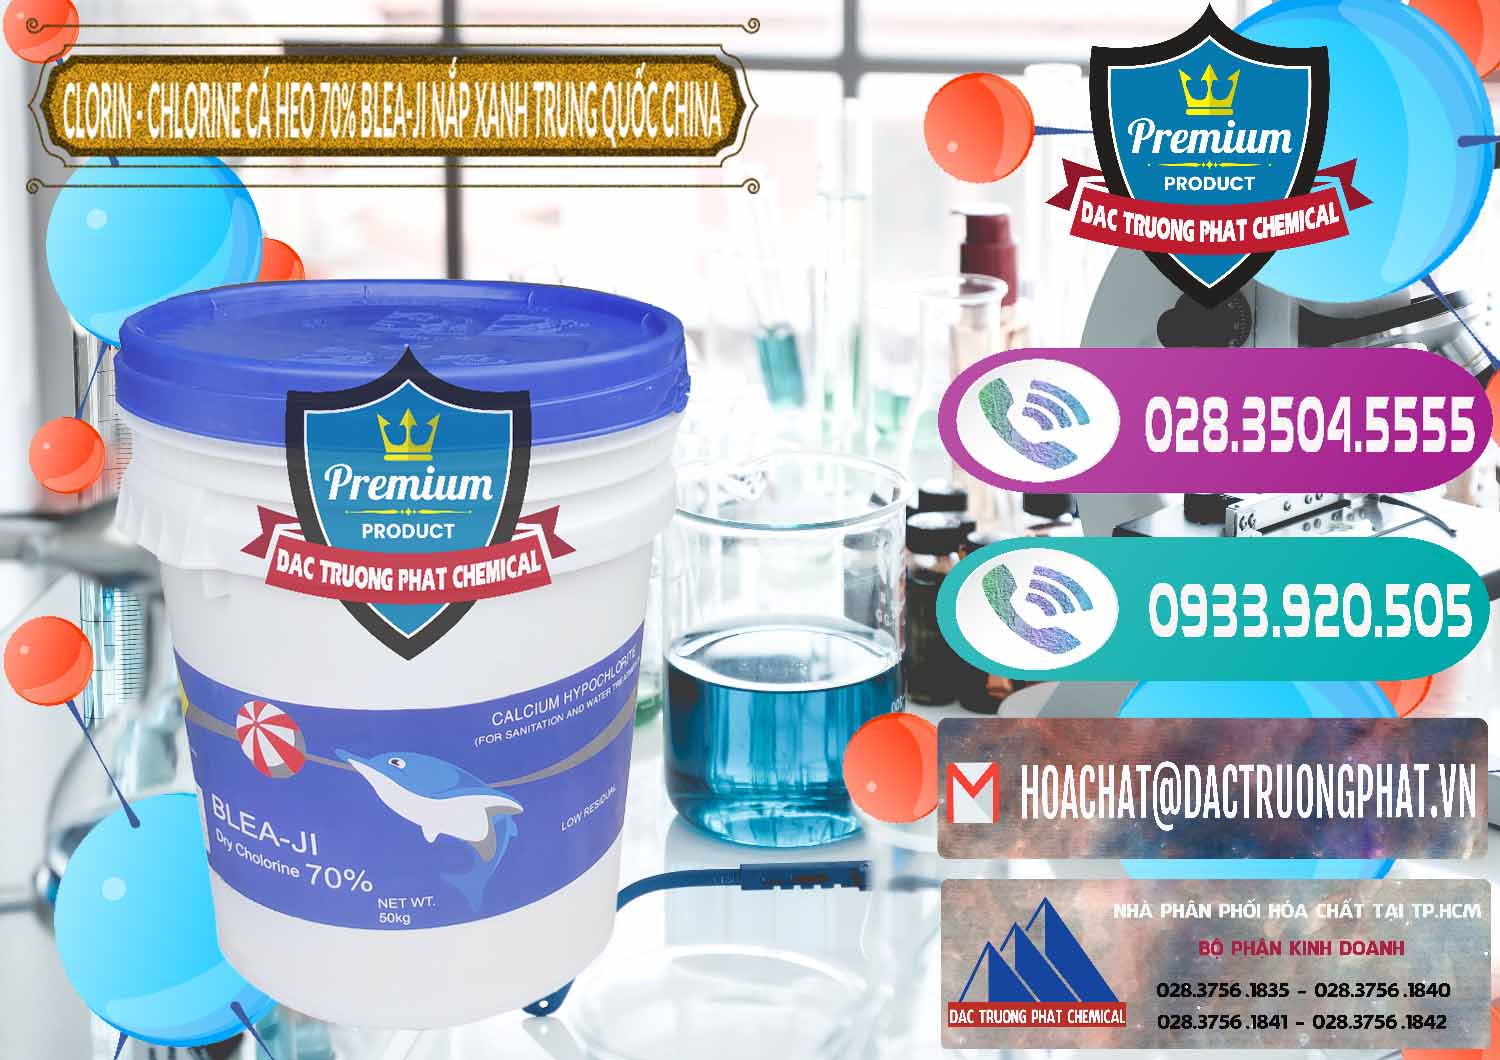 Công ty chuyên nhập khẩu & bán Clorin - Chlorine Cá Heo 70% Cá Heo Blea-Ji Thùng Tròn Nắp Xanh Trung Quốc China - 0208 - Kinh doanh ( phân phối ) hóa chất tại TP.HCM - hoachatxulynuoc.com